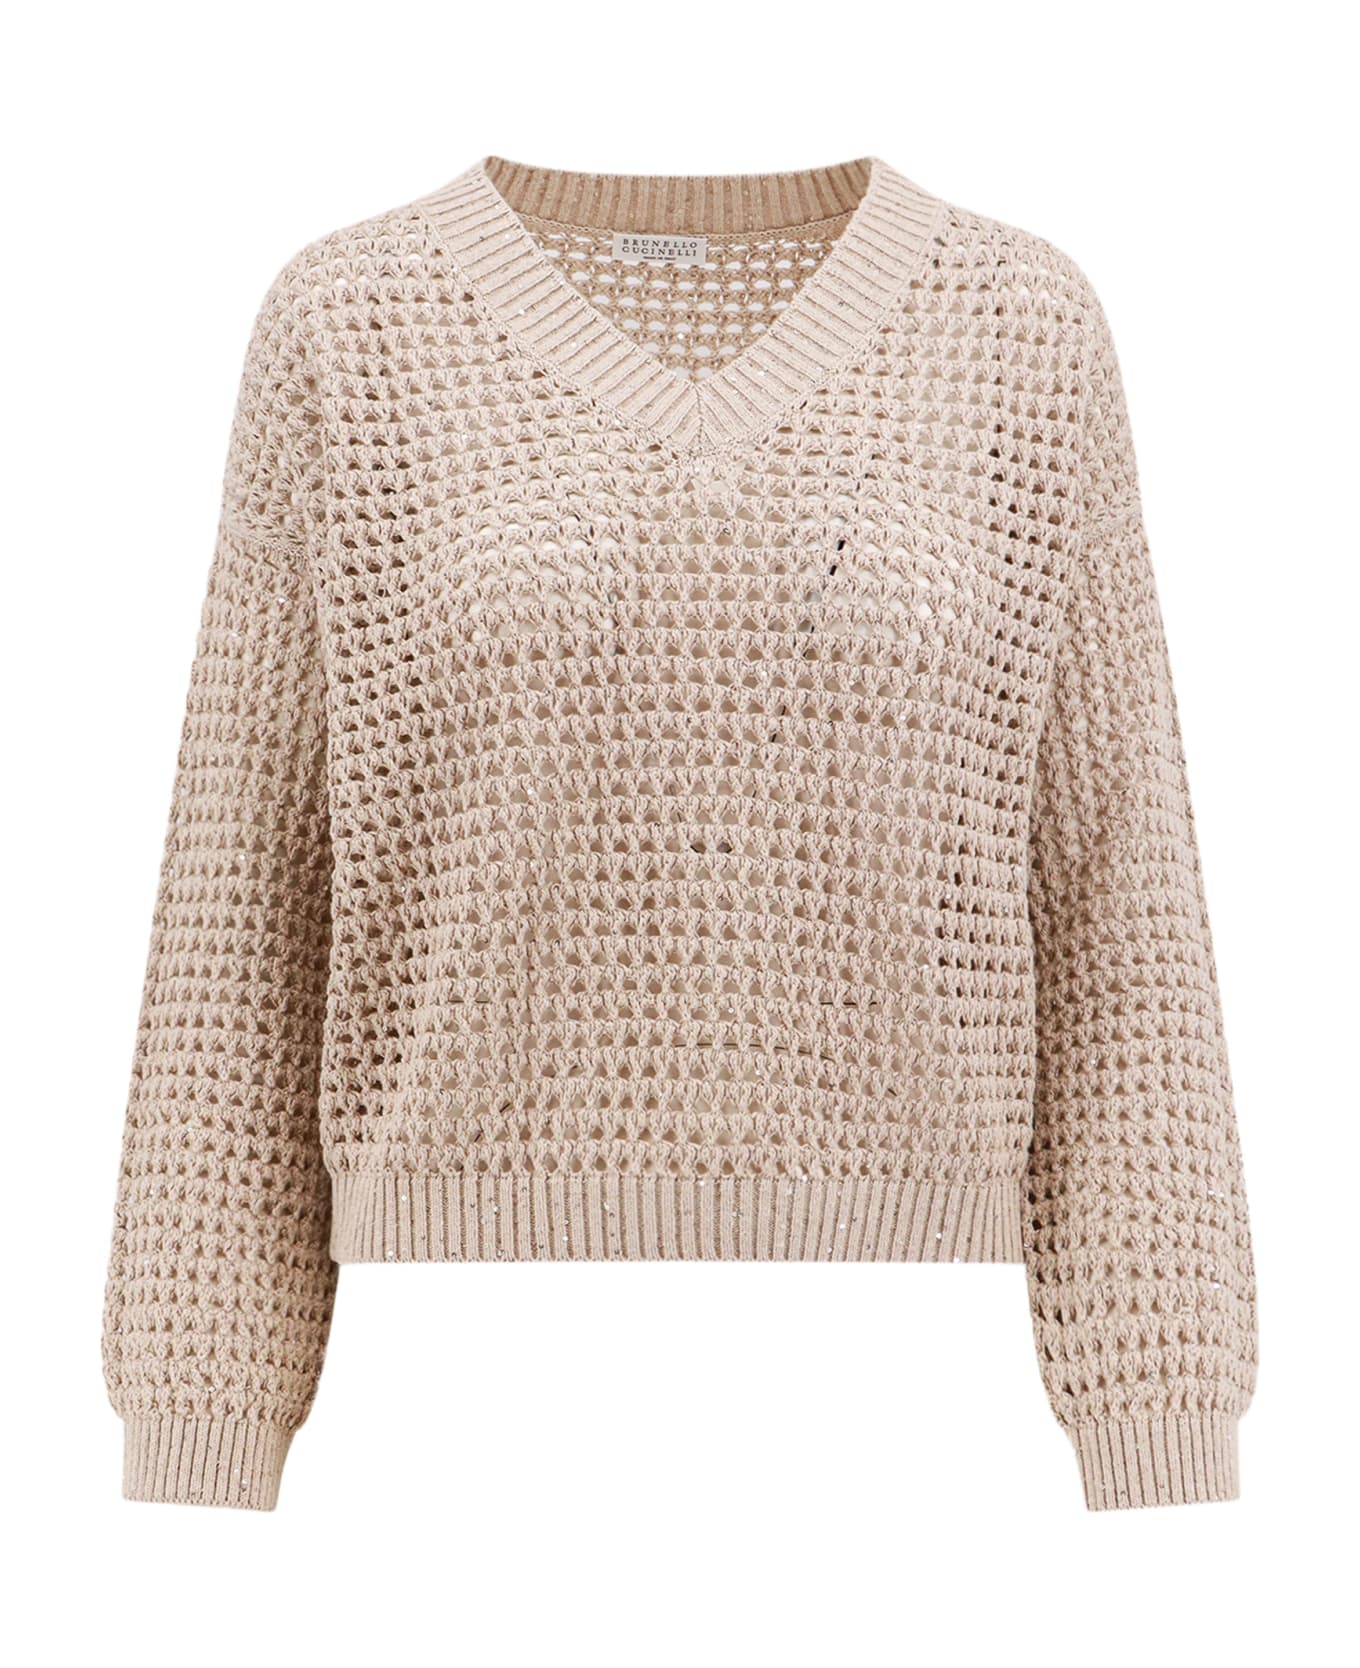 Brunello Cucinelli Mesh Knit Sweater - Beige